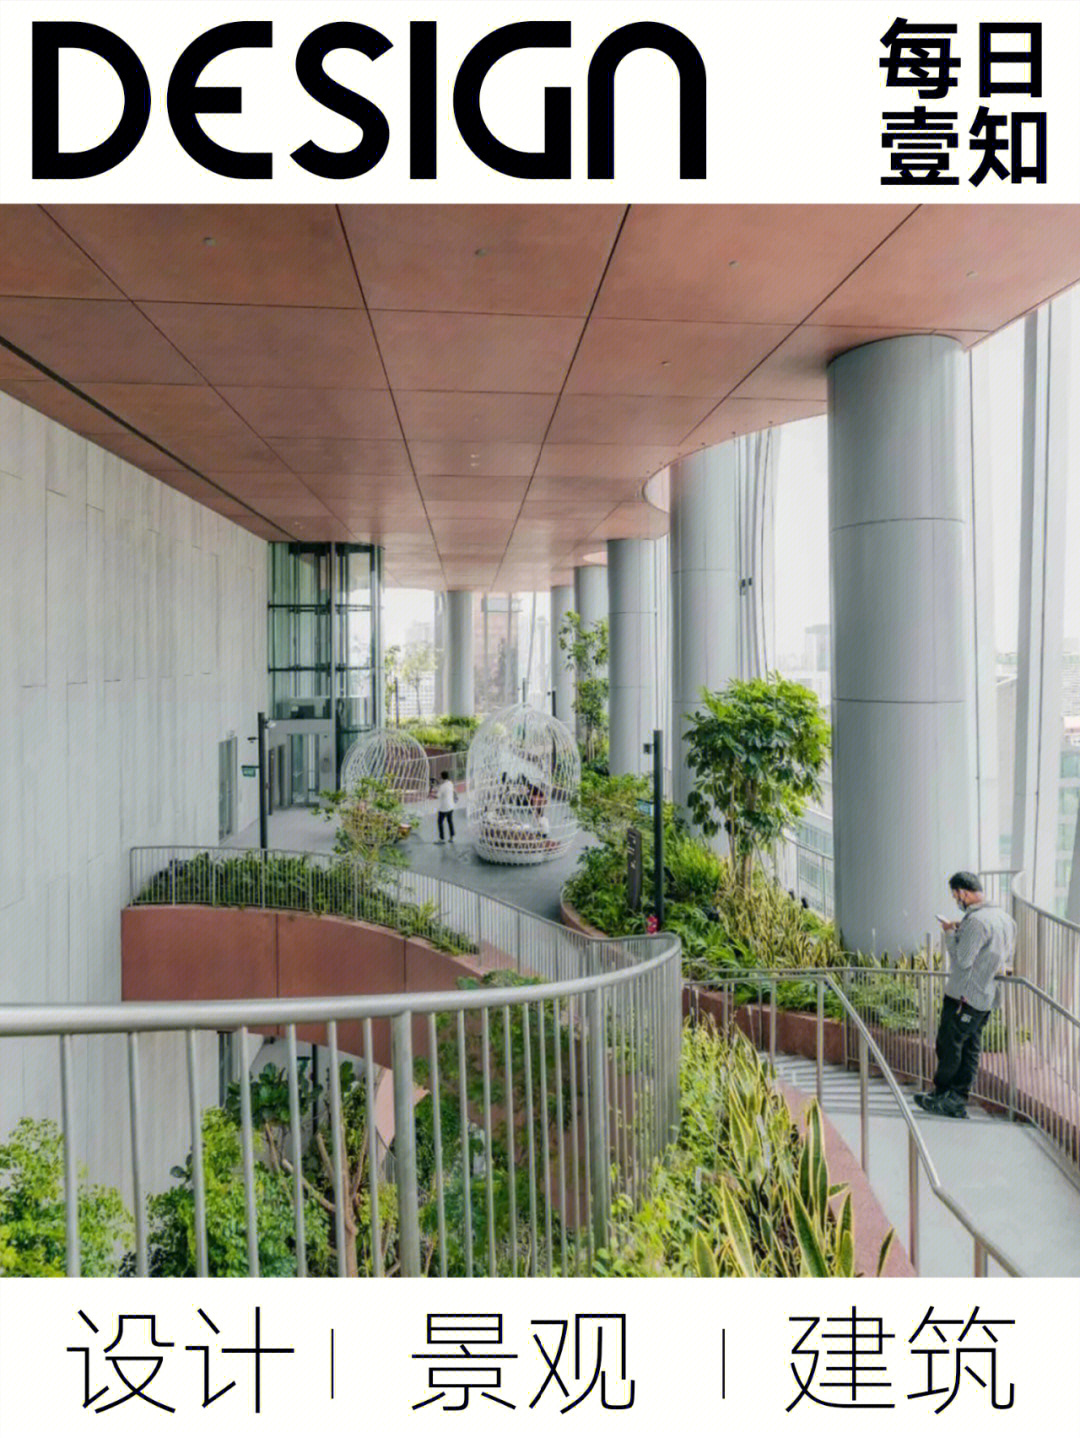 新加坡最新地标竣工空中花园开放参观